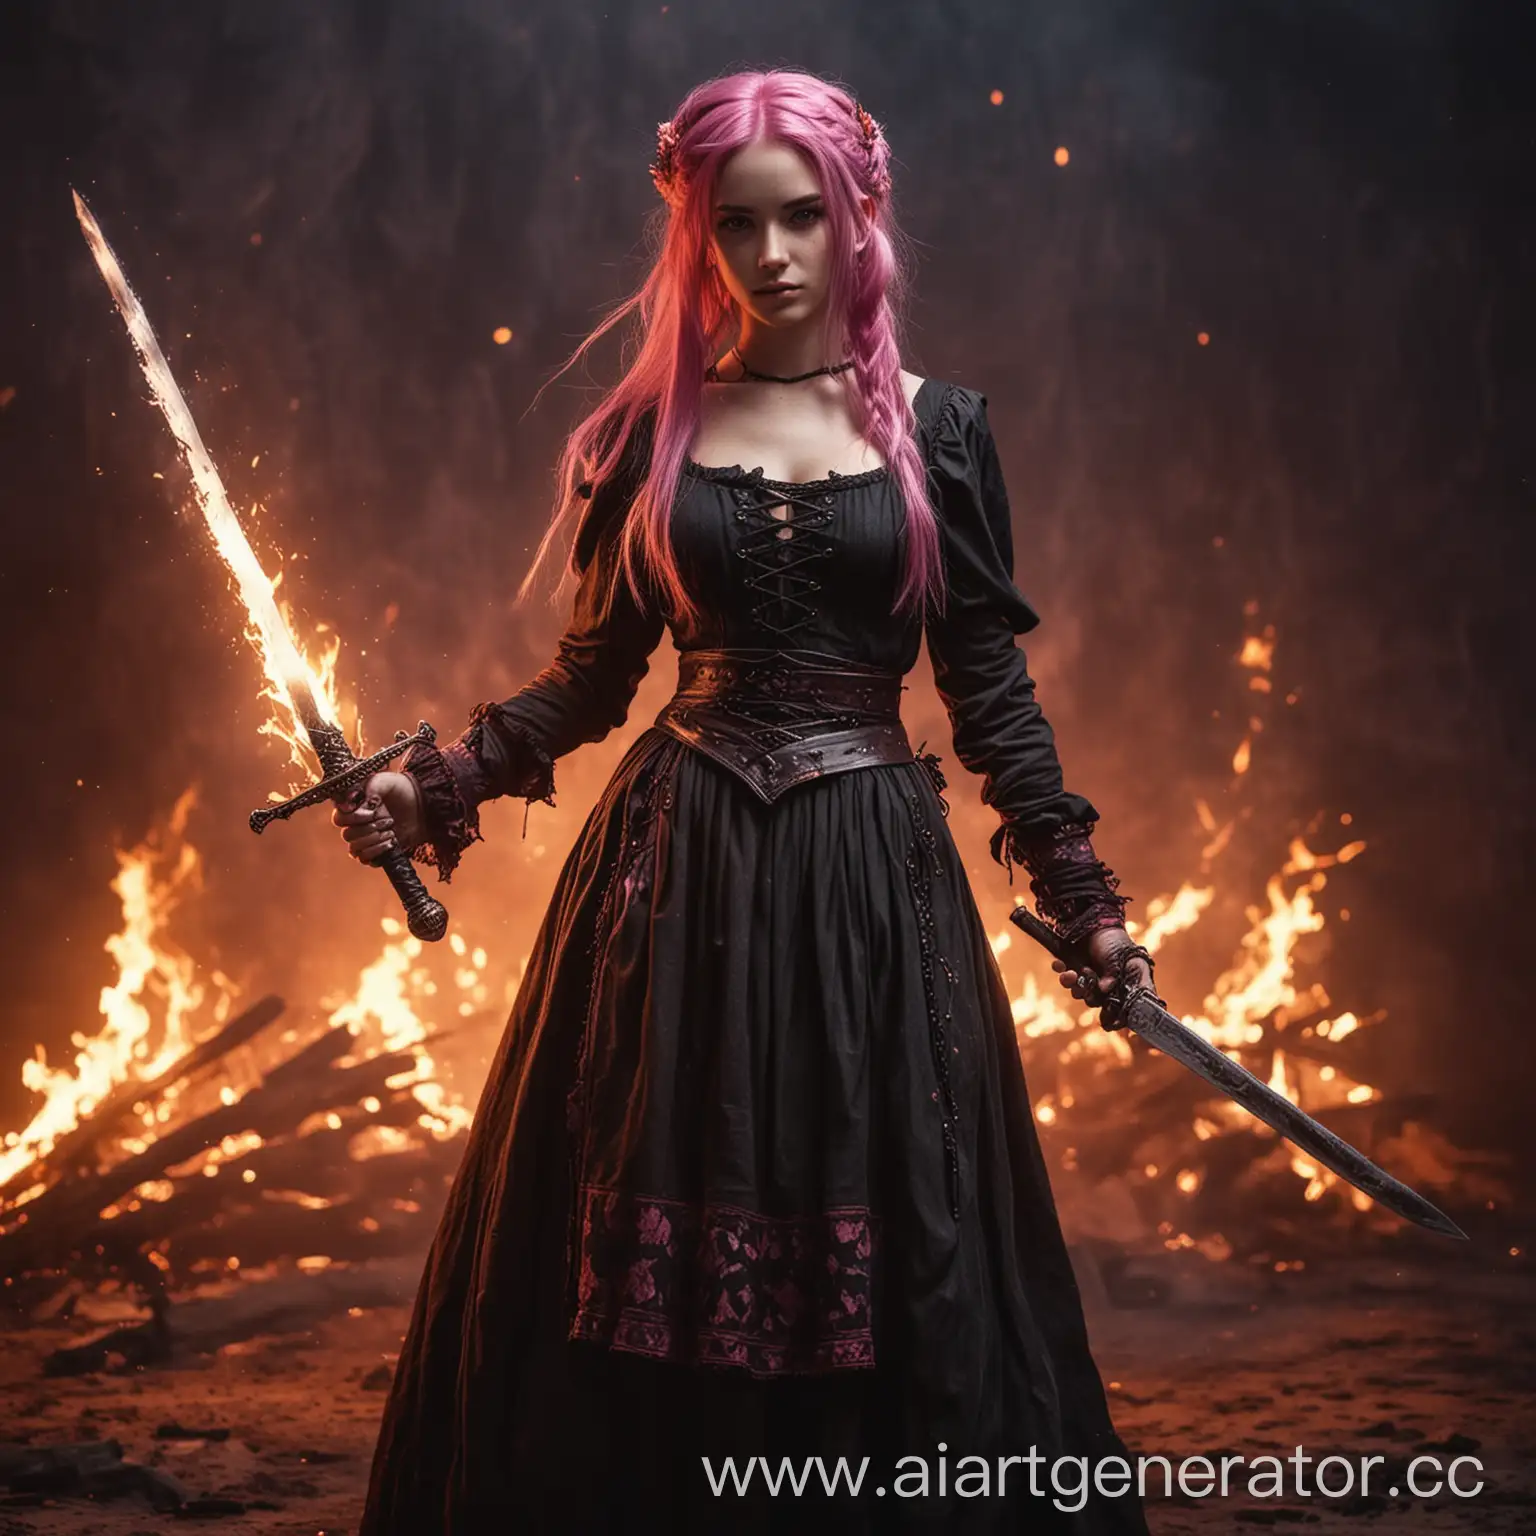 Стоит девушка с мечом, задний фон в огне, у девушки розовые волосы и одета в крестьянское поношенное платье, стиль dark fantasy